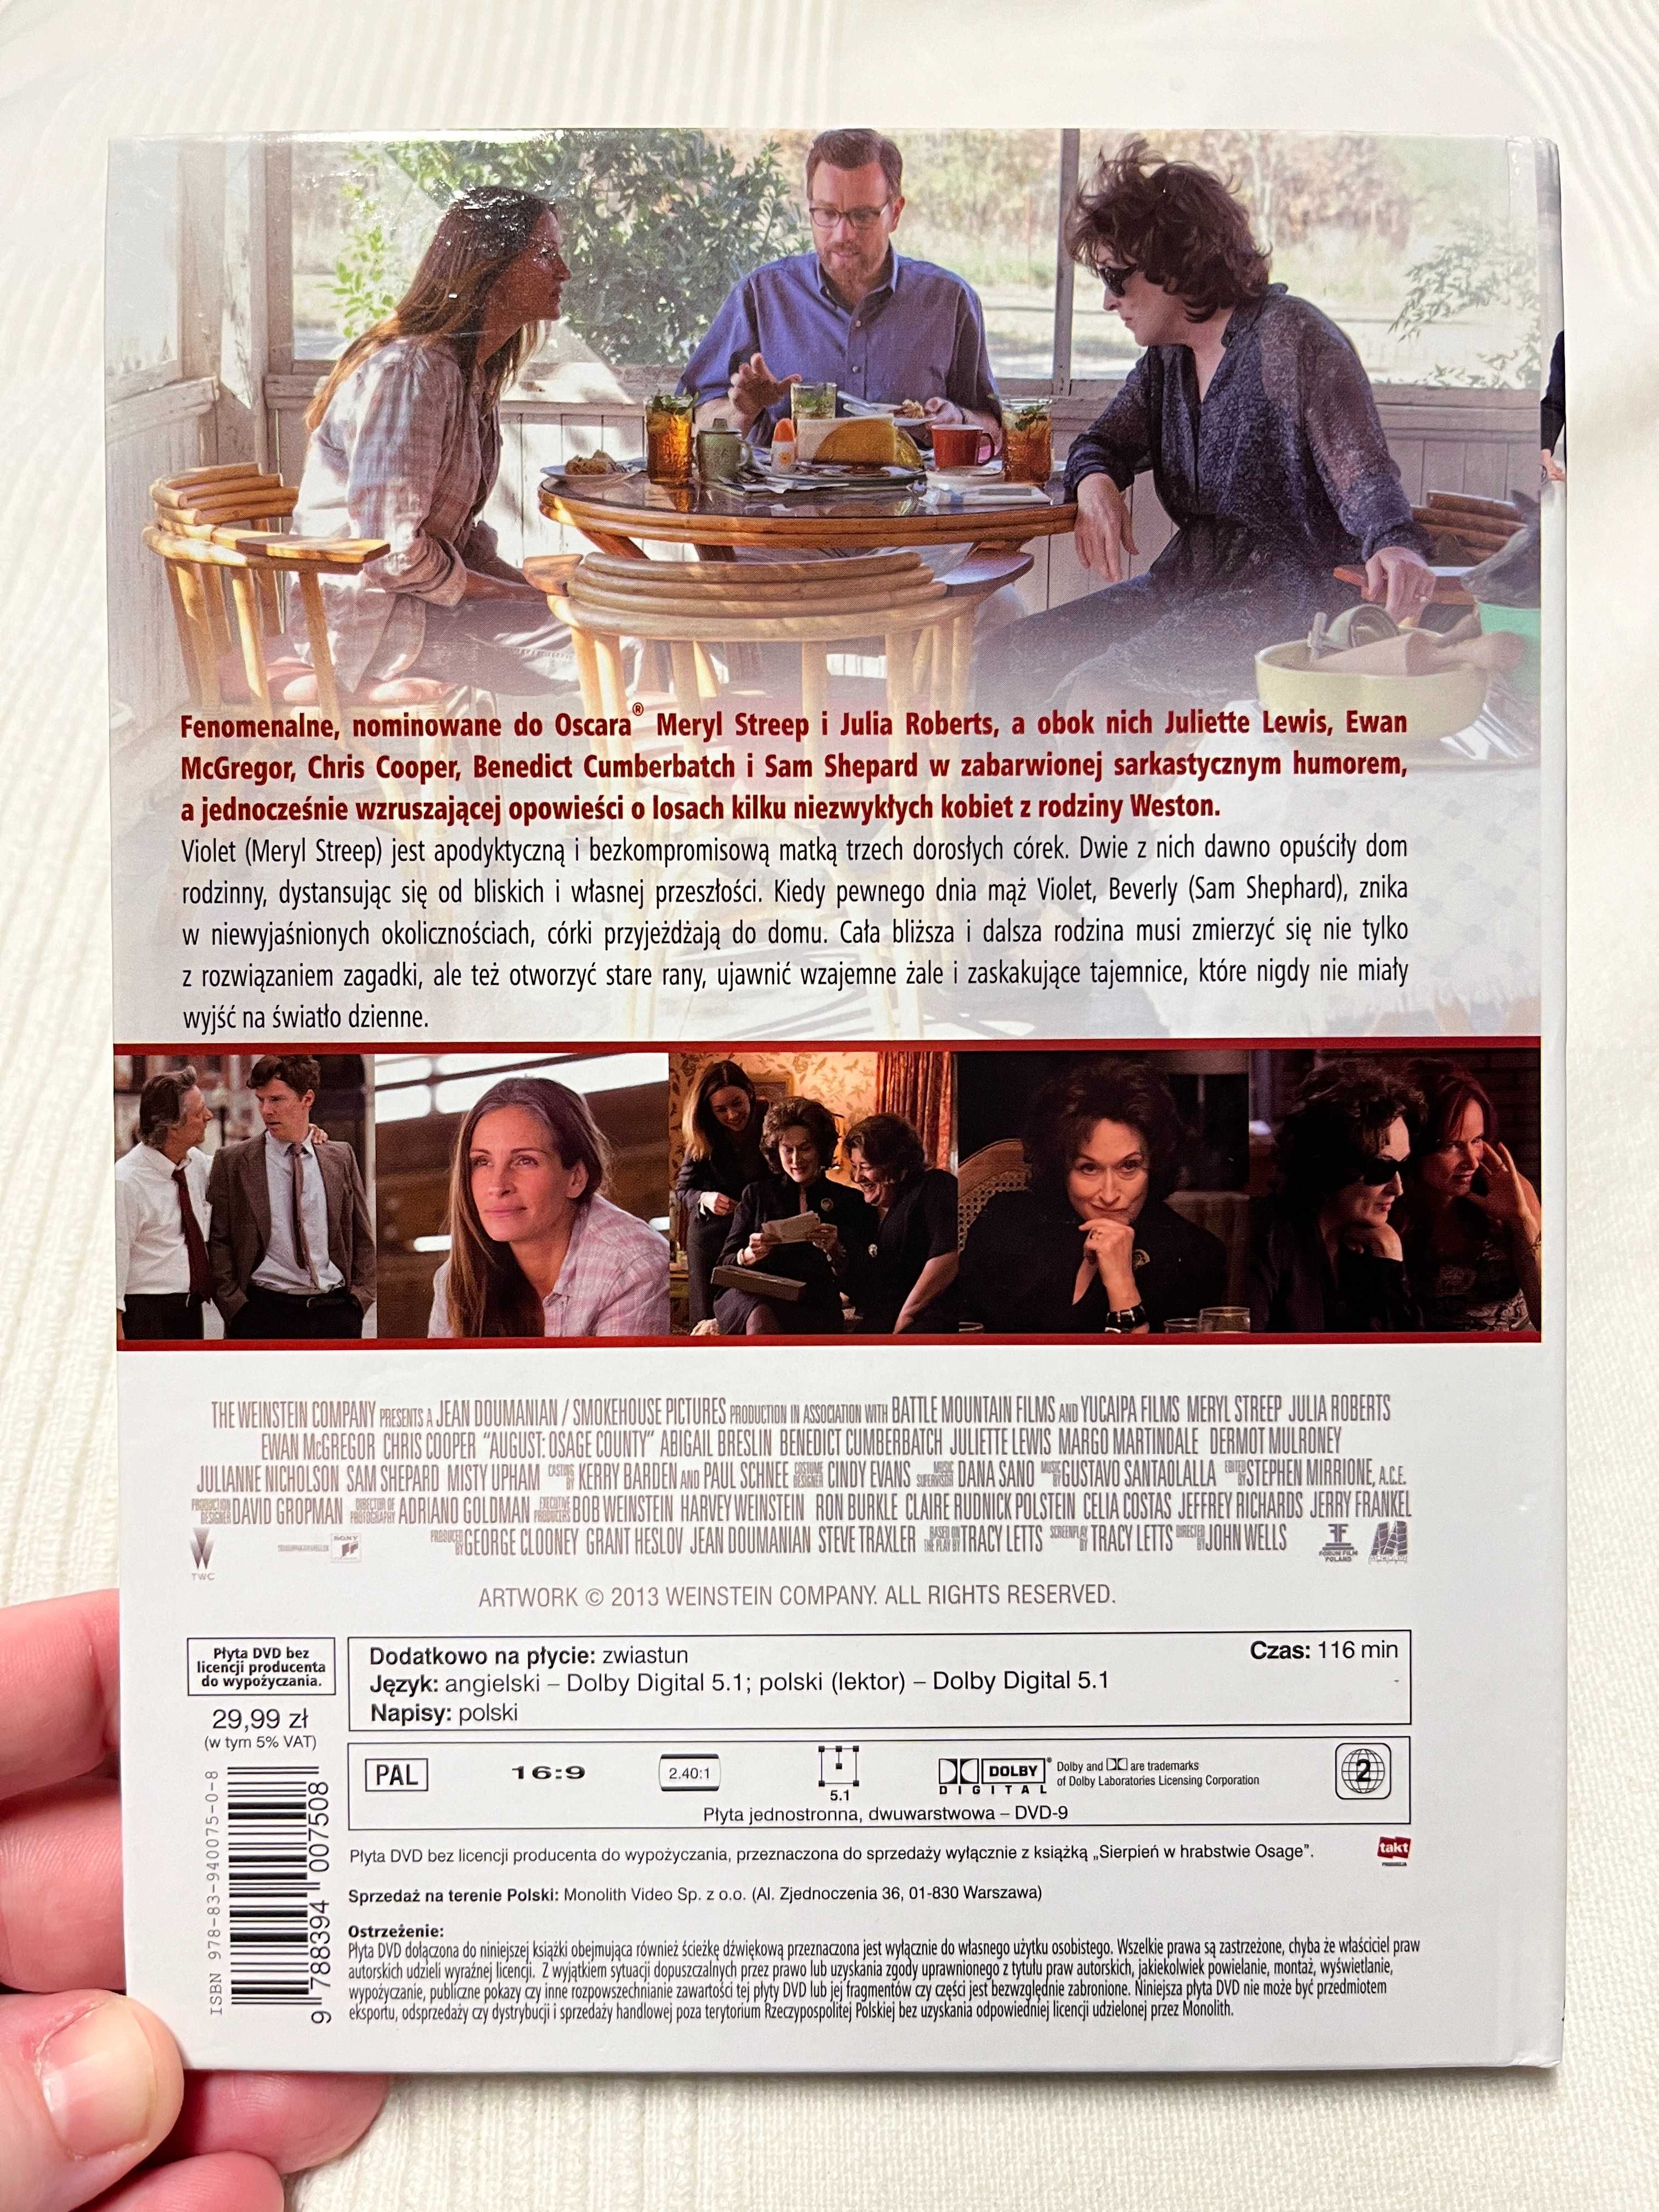 Sierpień w Hrabstwie Osage film 2013 płyta DVD dramat Meryl Streep